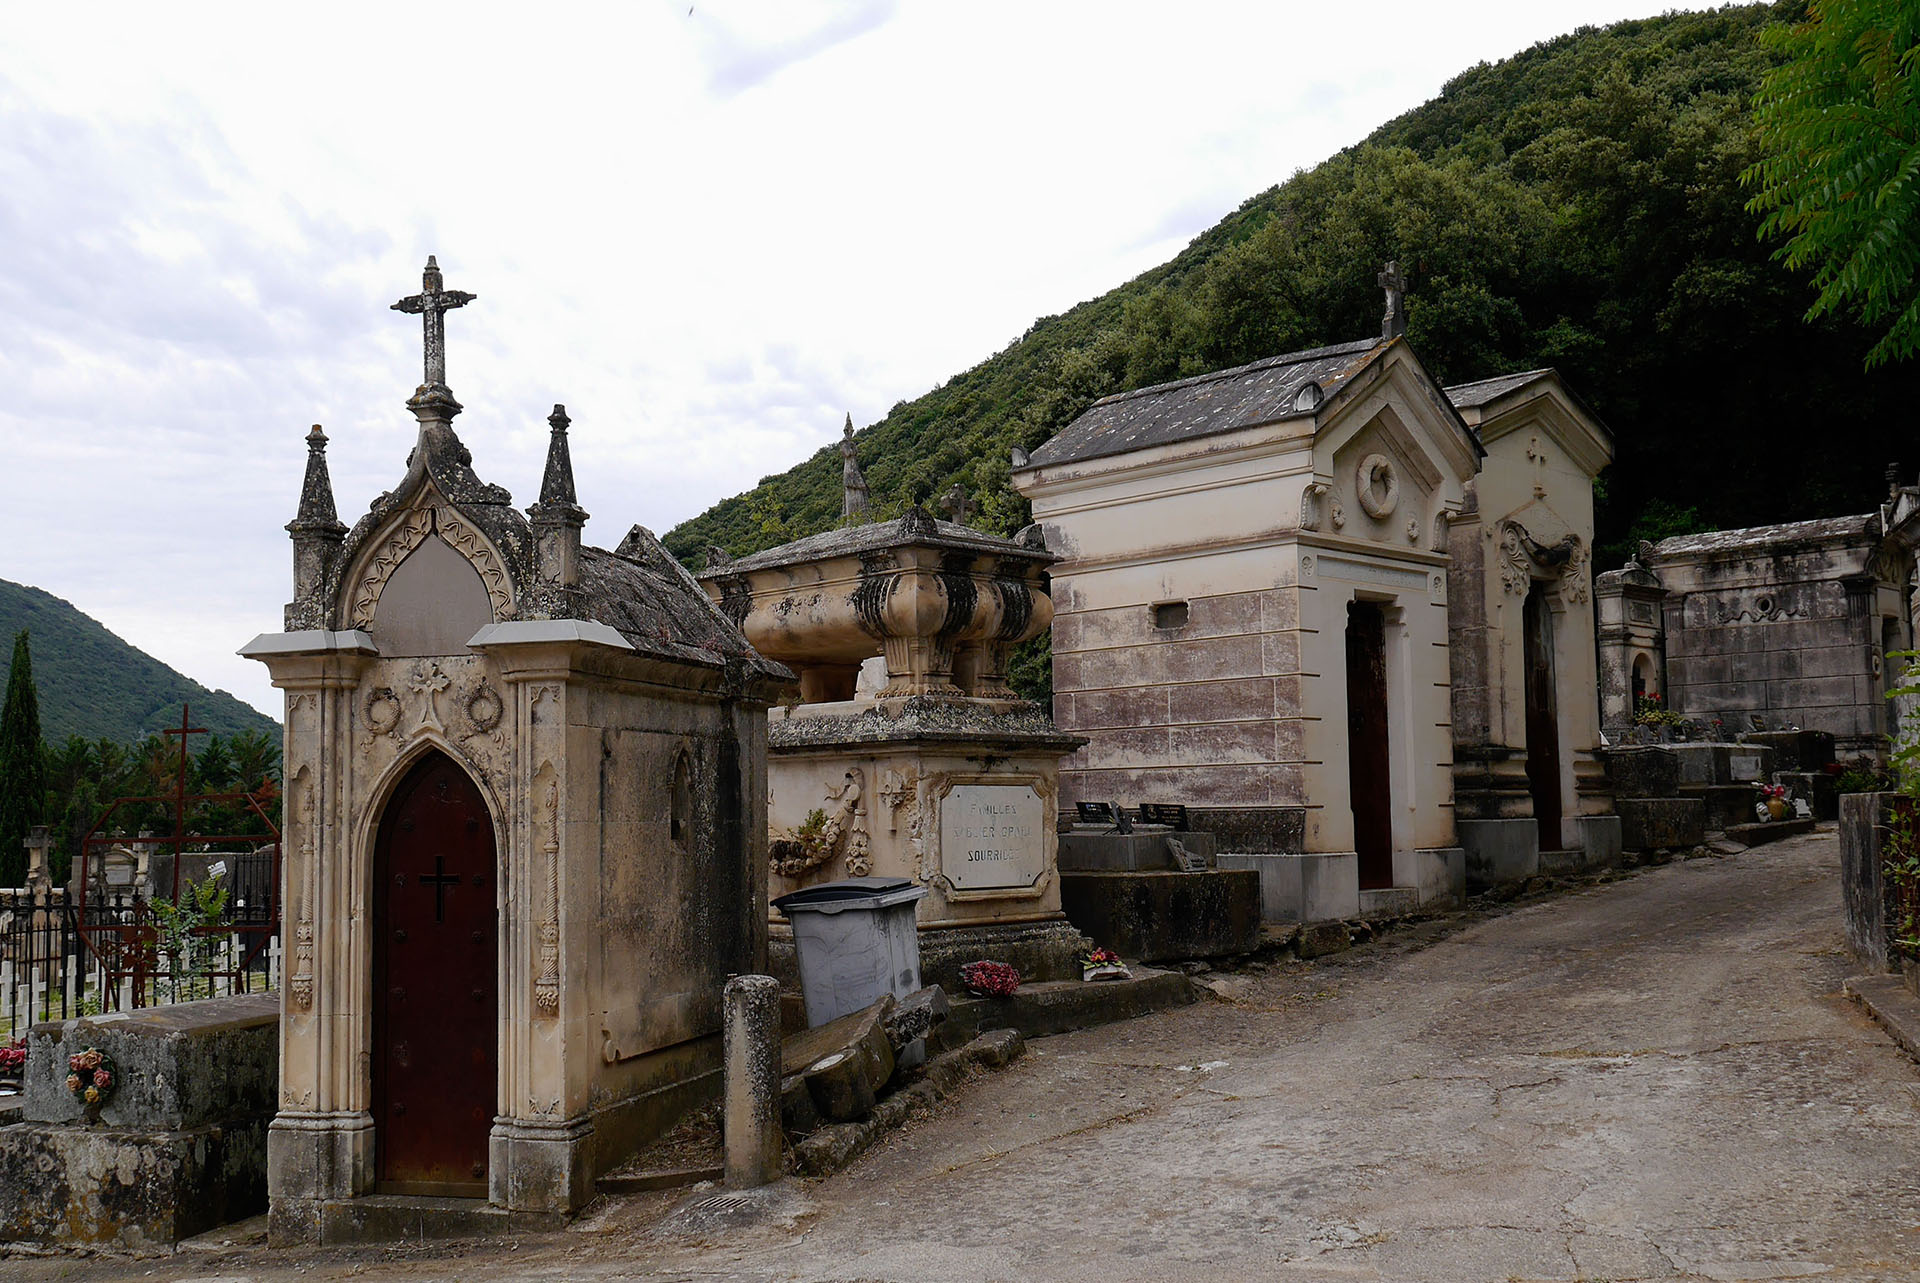 Tombes du cimetière de Lodève Graves in Lodève cemetery